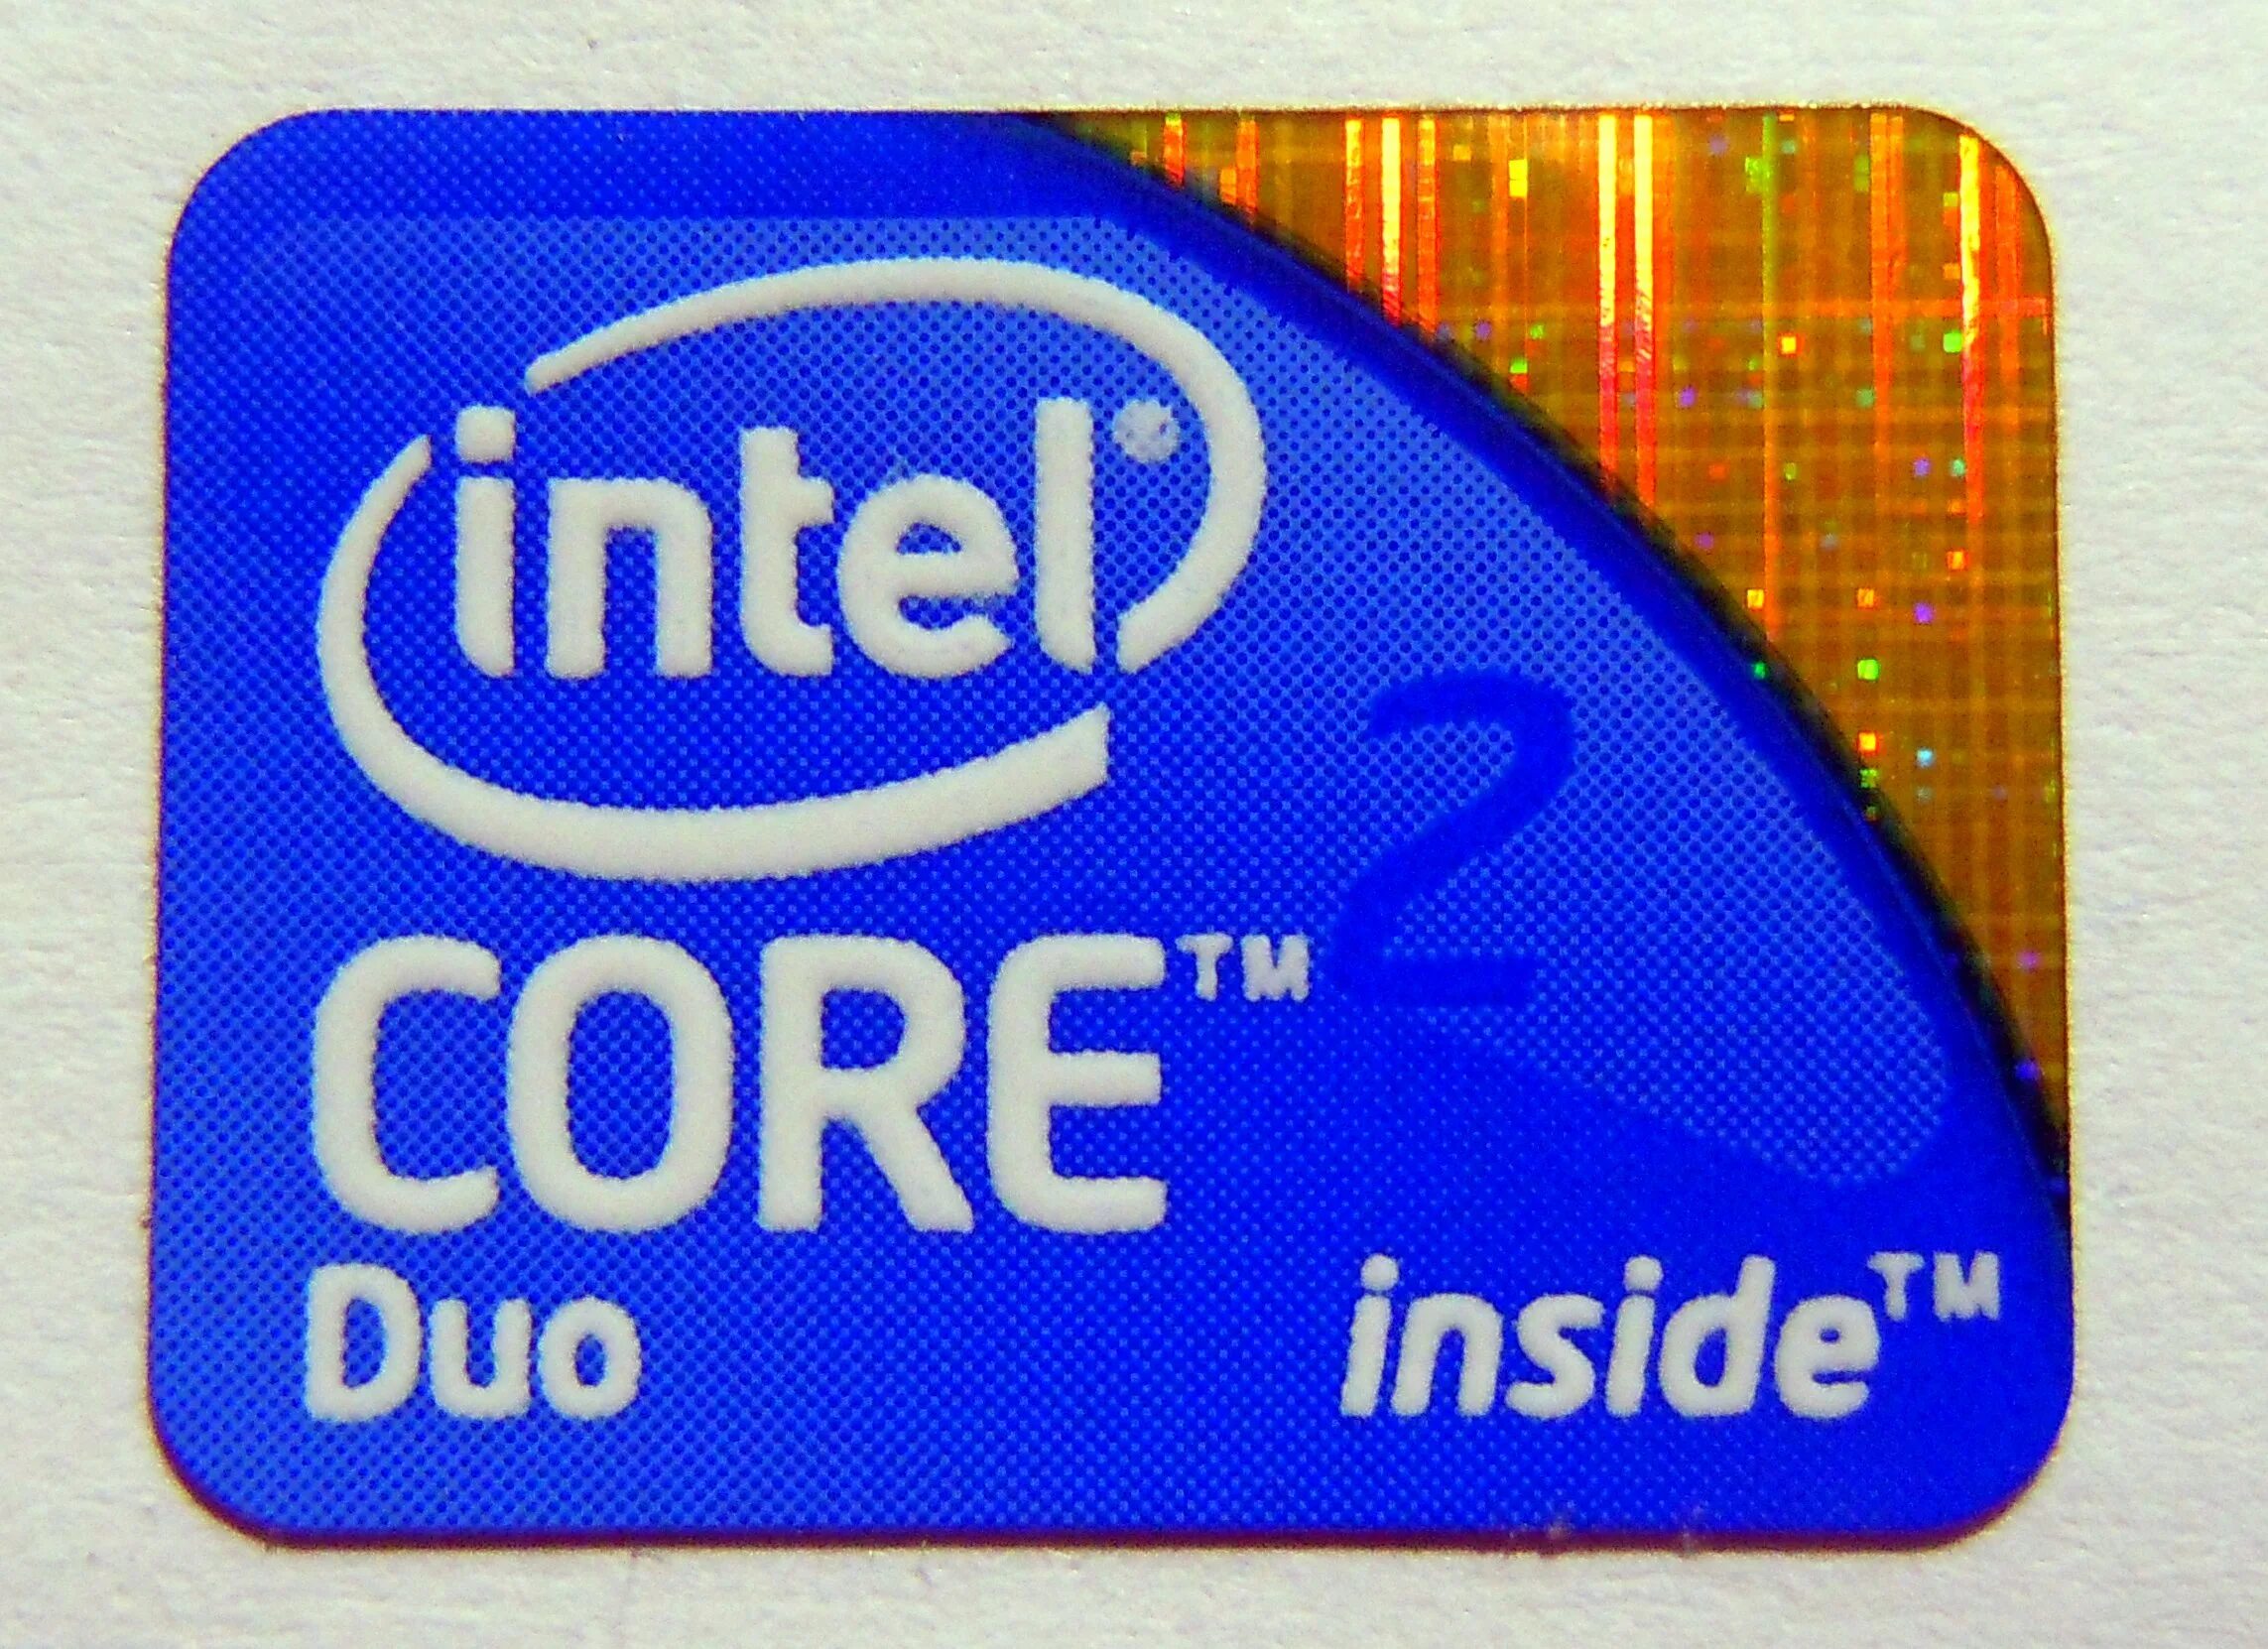 Core 2 duo сравнение. Наклейка Intel Core 2 Duo. Intel Core 2 Duo logo. Intel Core 2 Duo inside. Интел 2 дуо.